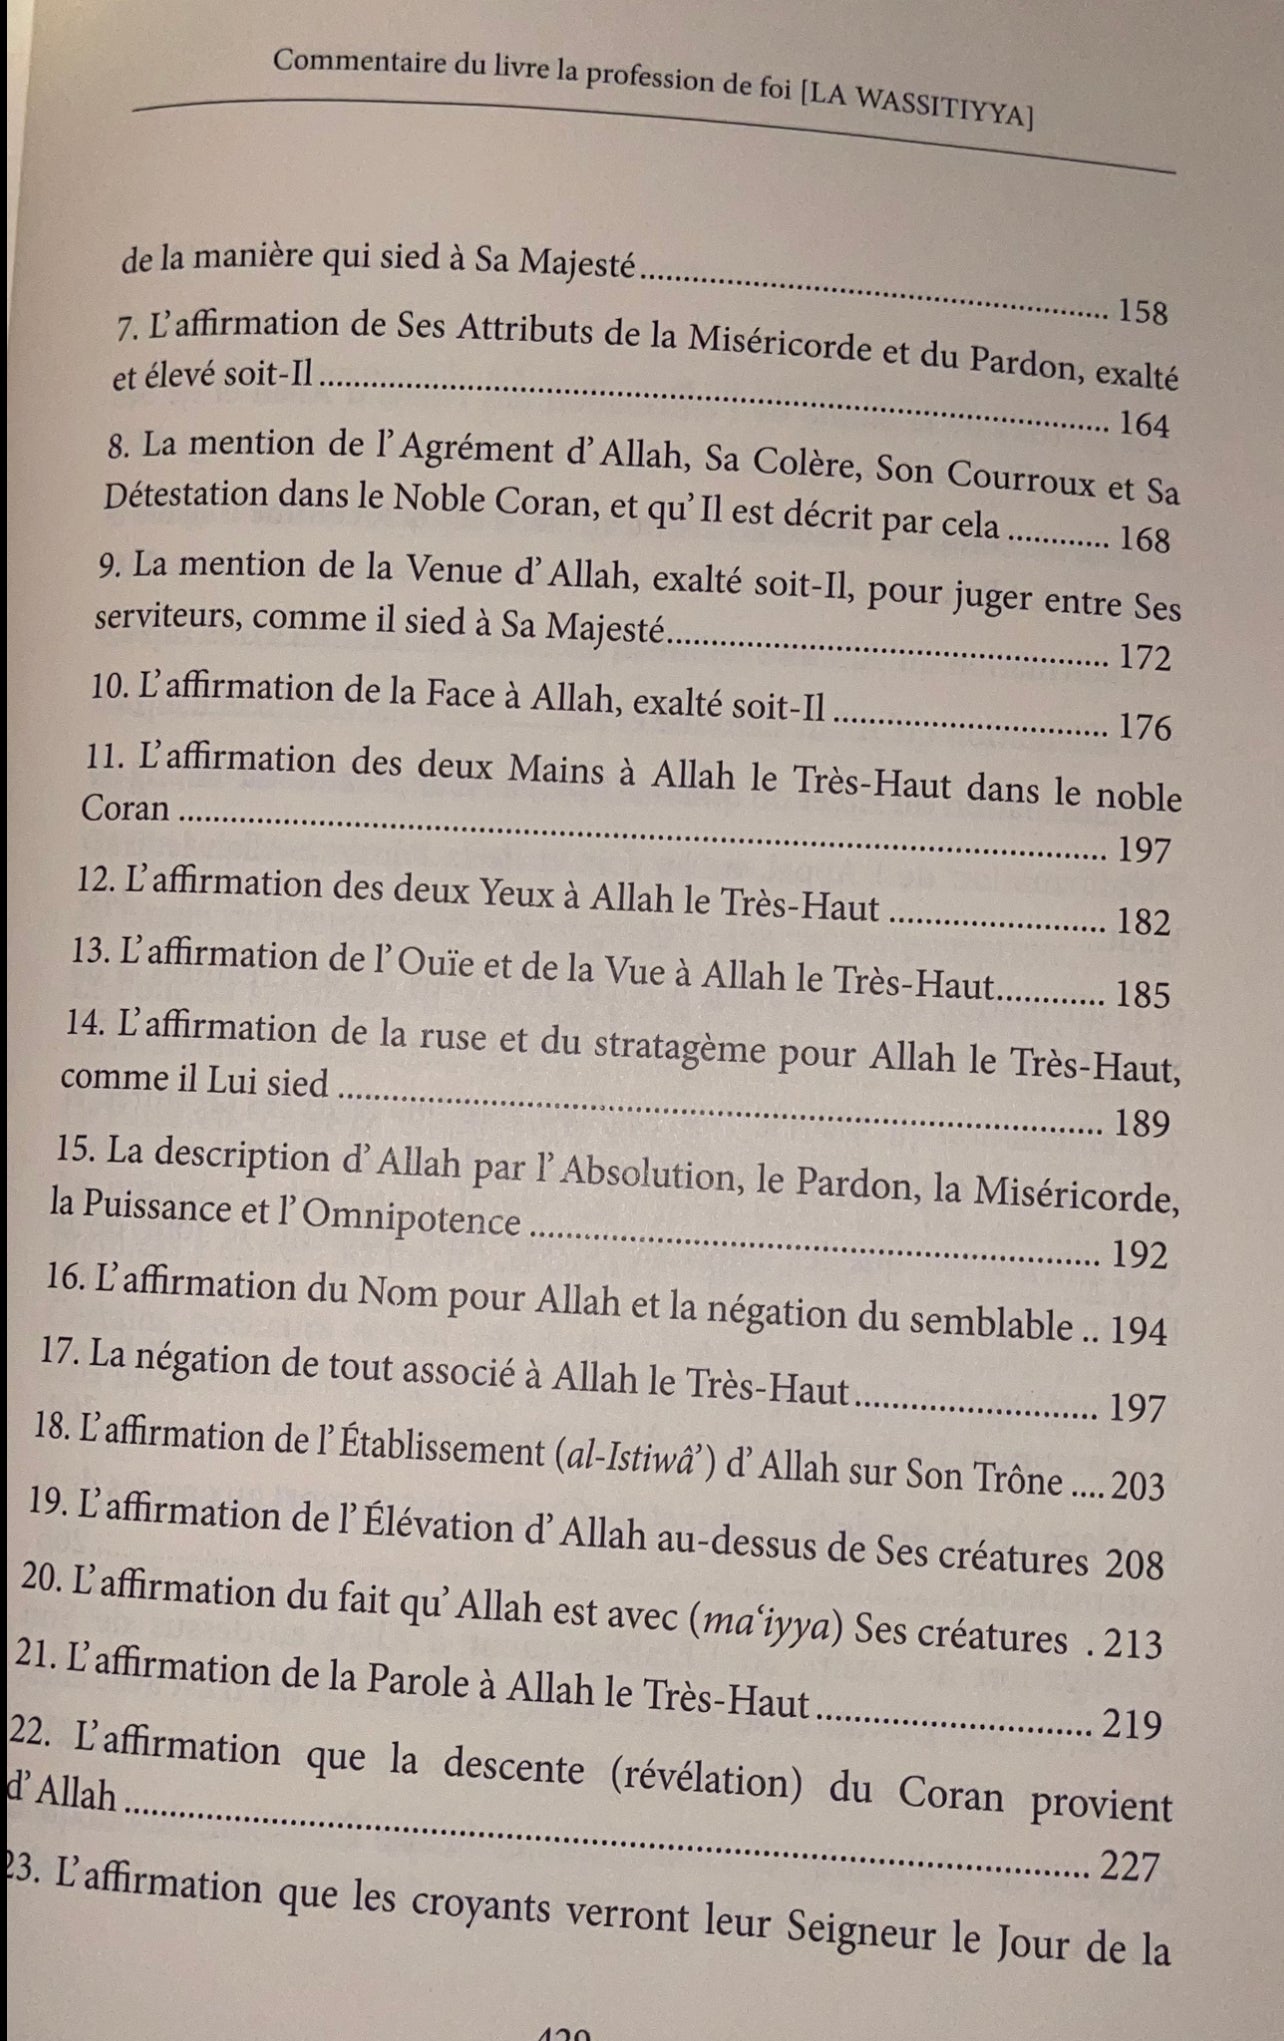 Commentaire du livre la profession de foi al-wassitiyya Ibn badis